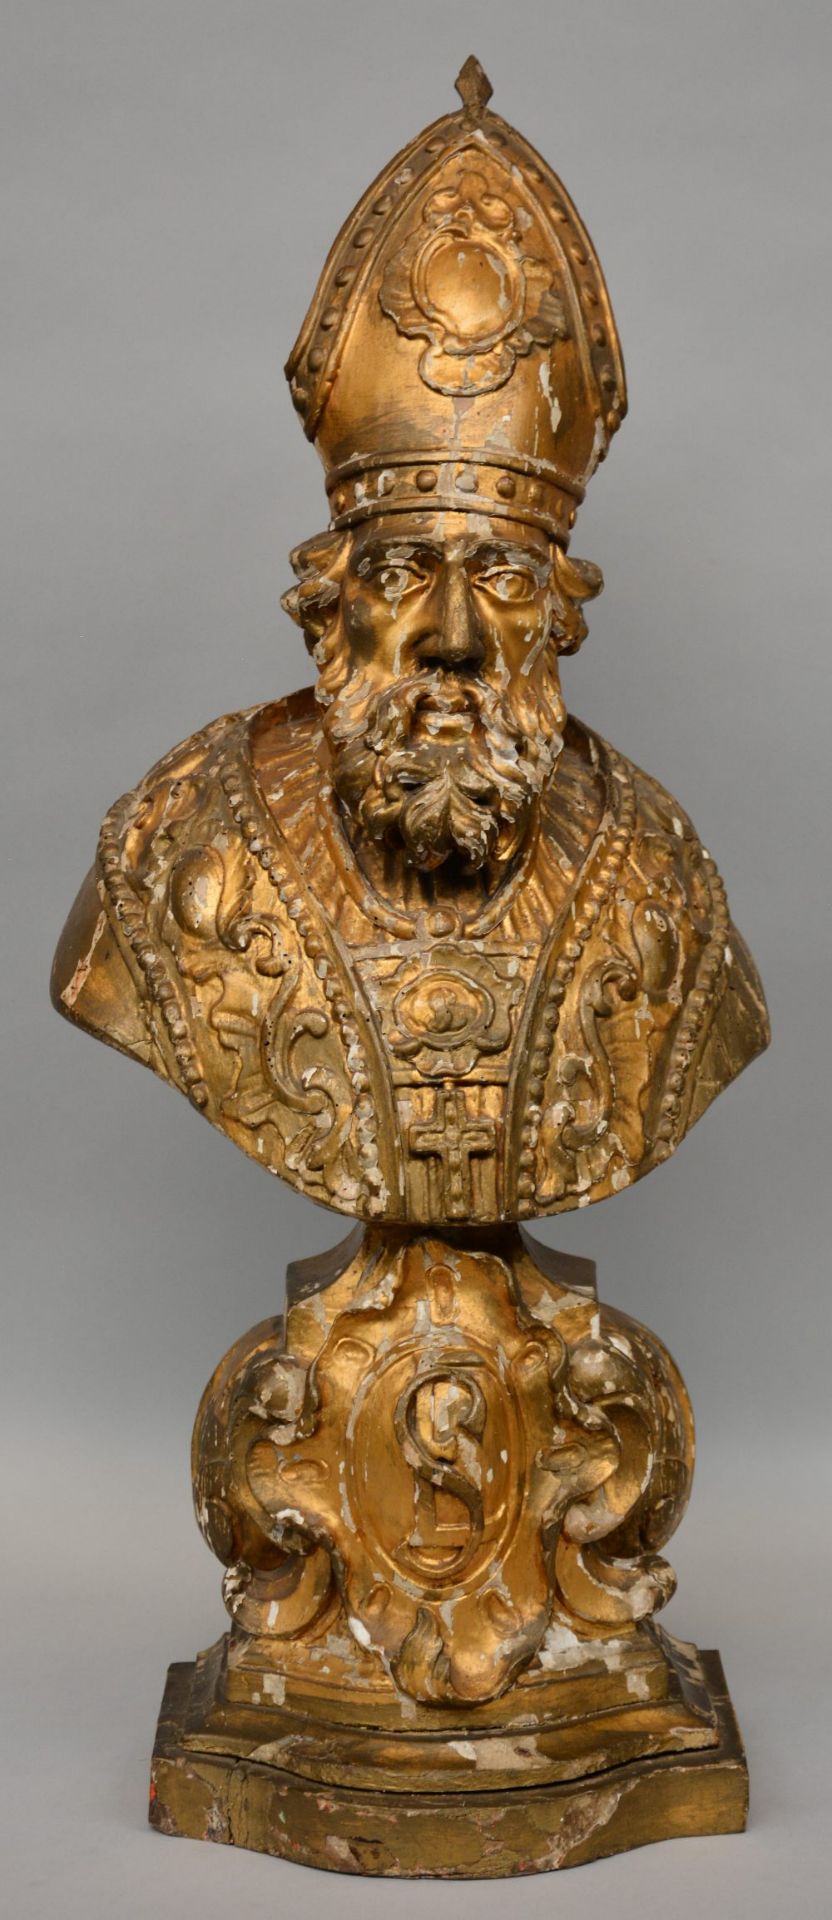 An 18thC gilt limewood bust of a saint, H 86 cm (restoration)